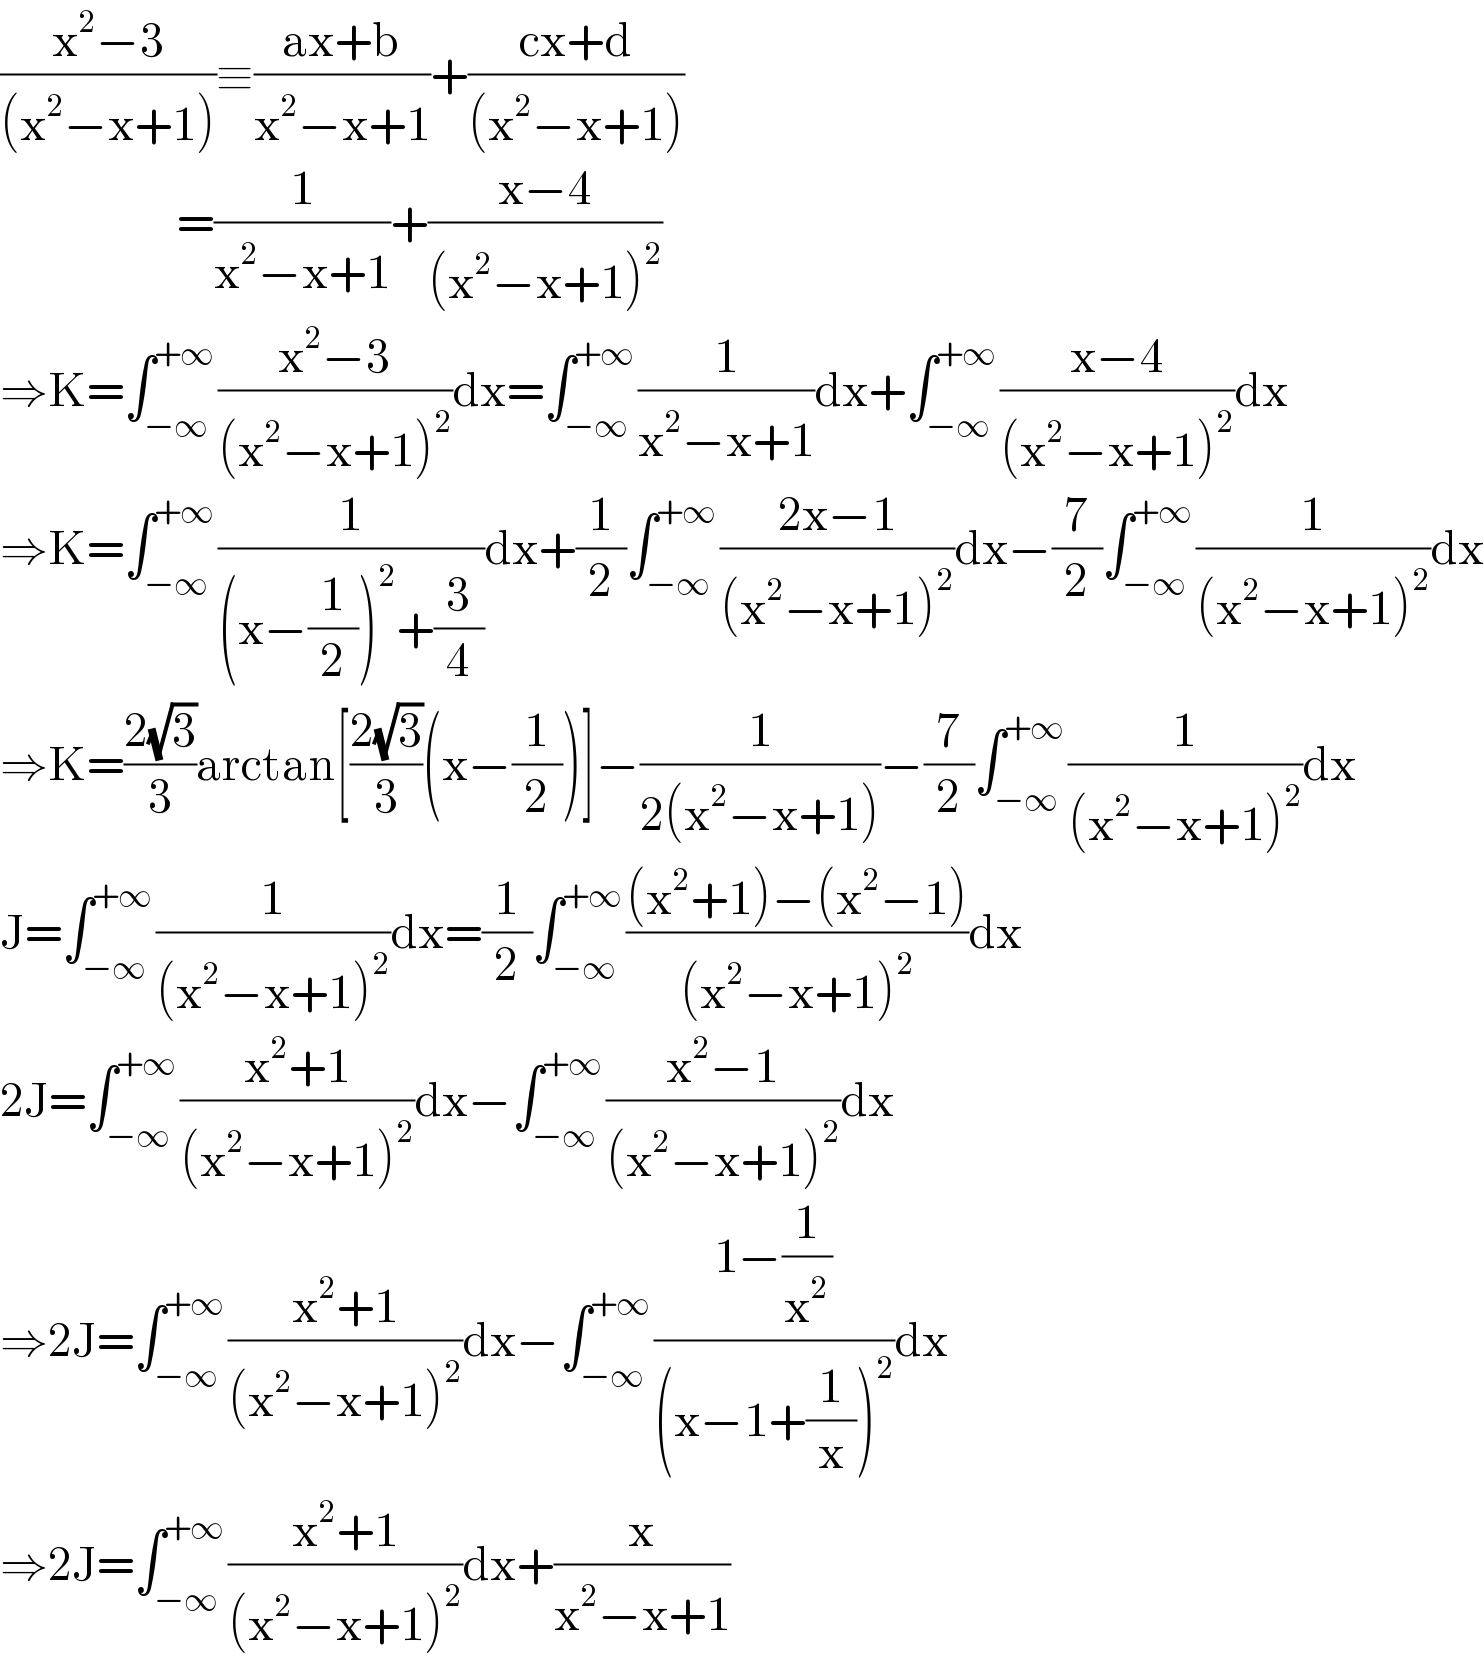 ((x^2 −3)/((x^2 −x+1)))≡((ax+b)/(x^2 −x+1))+((cx+d)/((x^2 −x+1)))                        =(1/(x^2 −x+1))+((x−4)/((x^2 −x+1)^2 ))                        ⇒K=∫_(−∞) ^(+∞) ((x^2 −3)/((x^2 −x+1)^2 ))dx=∫_(−∞) ^(+∞) (1/(x^2 −x+1))dx+∫_(−∞) ^(+∞) ((x−4)/((x^2 −x+1)^2 ))dx  ⇒K=∫_(−∞) ^(+∞) (1/((x−(1/2))^2 +(3/4)))dx+(1/2)∫_(−∞) ^(+∞) ((2x−1)/((x^2 −x+1)^2 ))dx−(7/2)∫_(−∞) ^(+∞) (1/((x^2 −x+1)^2 ))dx  ⇒K=((2(√3))/3)arctan[((2(√3))/3)(x−(1/2))]−(1/(2(x^2 −x+1)))−(7/2)∫_(−∞) ^(+∞) (1/((x^2 −x+1)^2 ))dx  J=∫_(−∞) ^(+∞) (1/((x^2 −x+1)^2 ))dx=(1/2)∫_(−∞) ^(+∞) (((x^2 +1)−(x^2 −1))/((x^2 −x+1)^2 ))dx  2J=∫_(−∞) ^(+∞) ((x^2 +1)/((x^2 −x+1)^2 ))dx−∫_(−∞) ^(+∞) ((x^2 −1)/((x^2 −x+1)^2 ))dx  ⇒2J=∫_(−∞) ^(+∞) ((x^2 +1)/((x^2 −x+1)^2 ))dx−∫_(−∞) ^(+∞) ((1−(1/x^2 ))/((x−1+(1/x))^2 ))dx  ⇒2J=∫_(−∞) ^(+∞) ((x^2 +1)/((x^2 −x+1)^2 ))dx+(x/(x^2 −x+1))  